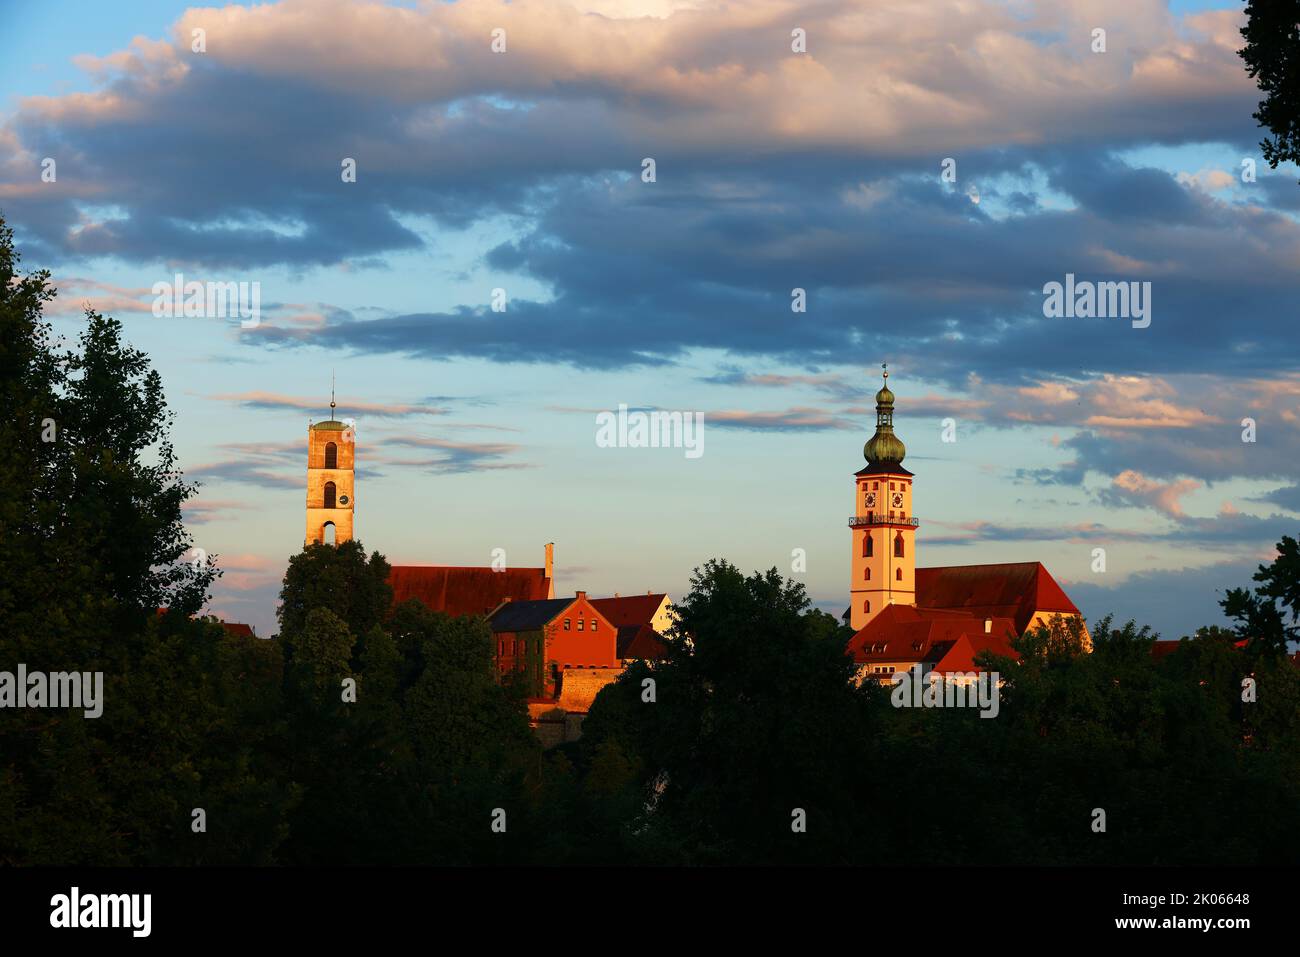 Kirche, Kirchturm in der Altstadt oder Innenstadt mit Schloss und dramatischen Wolken in Sulzbach Rosenberg, Amberg, Oberpfalz, Bayern! Stock Photo